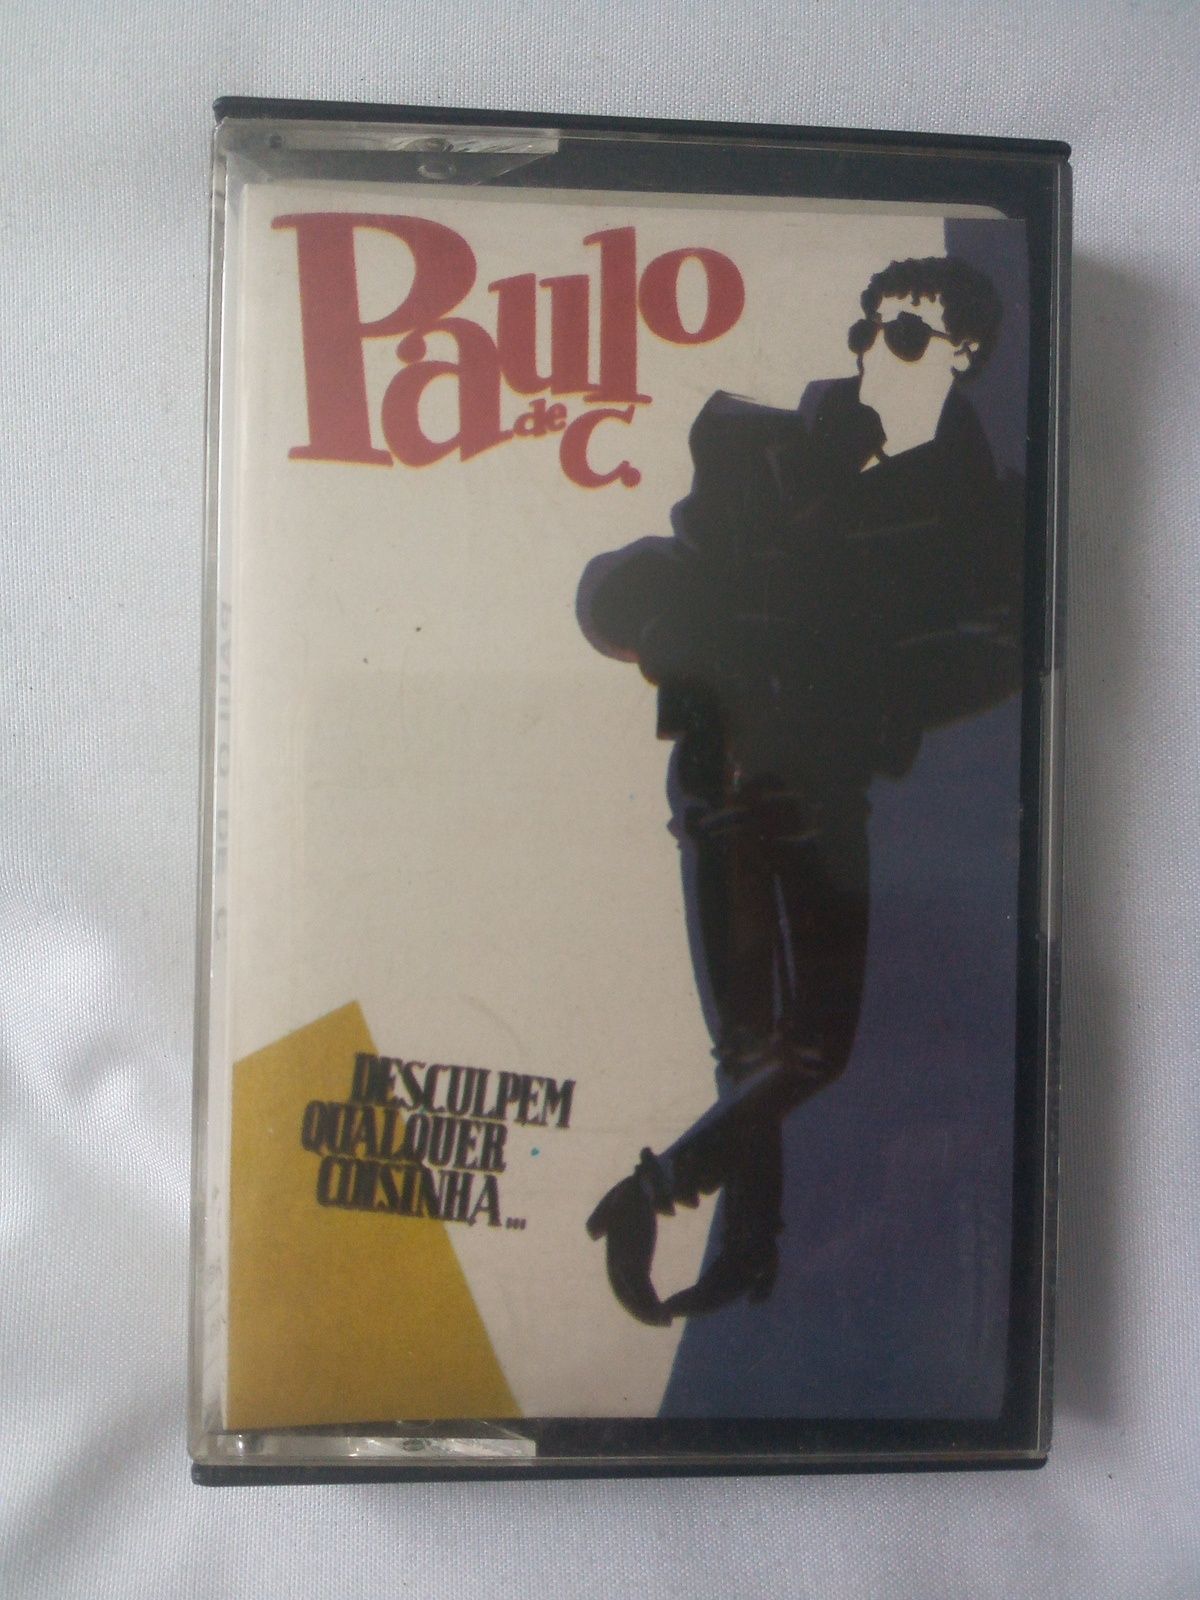 Cassete áudio Paulo de Carvalho